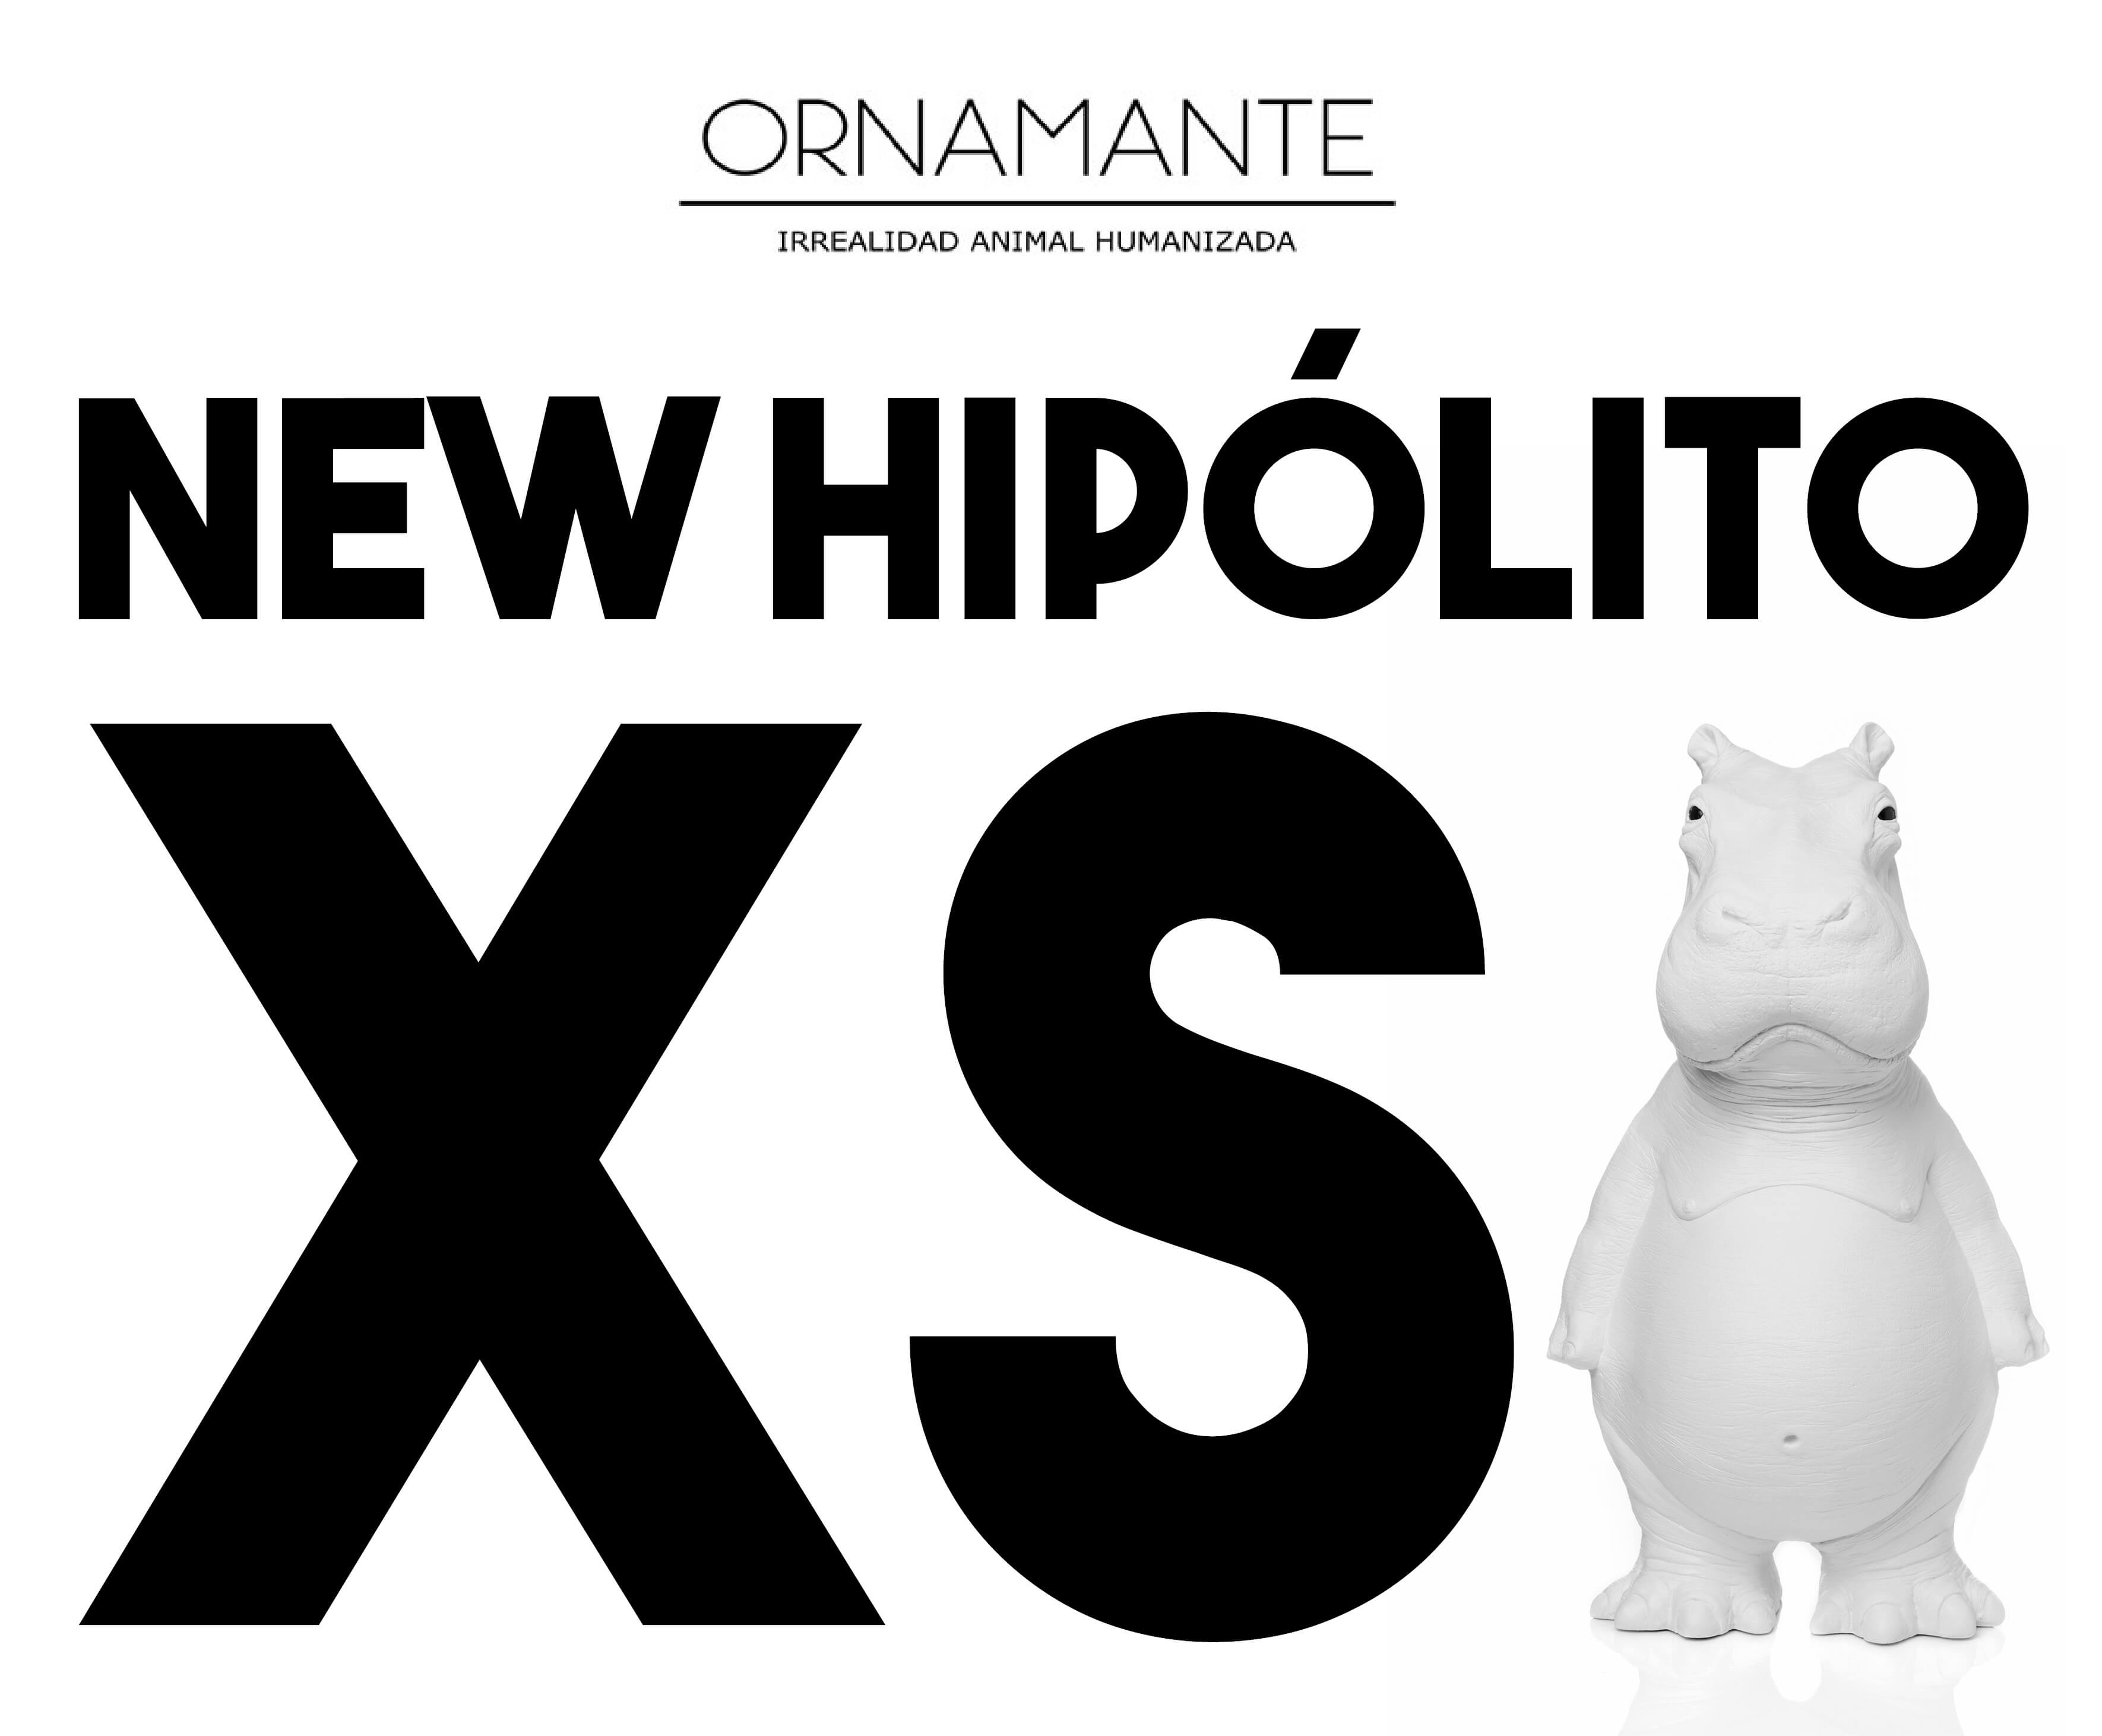 NEW HIPOLITO XS ORNAMANTE